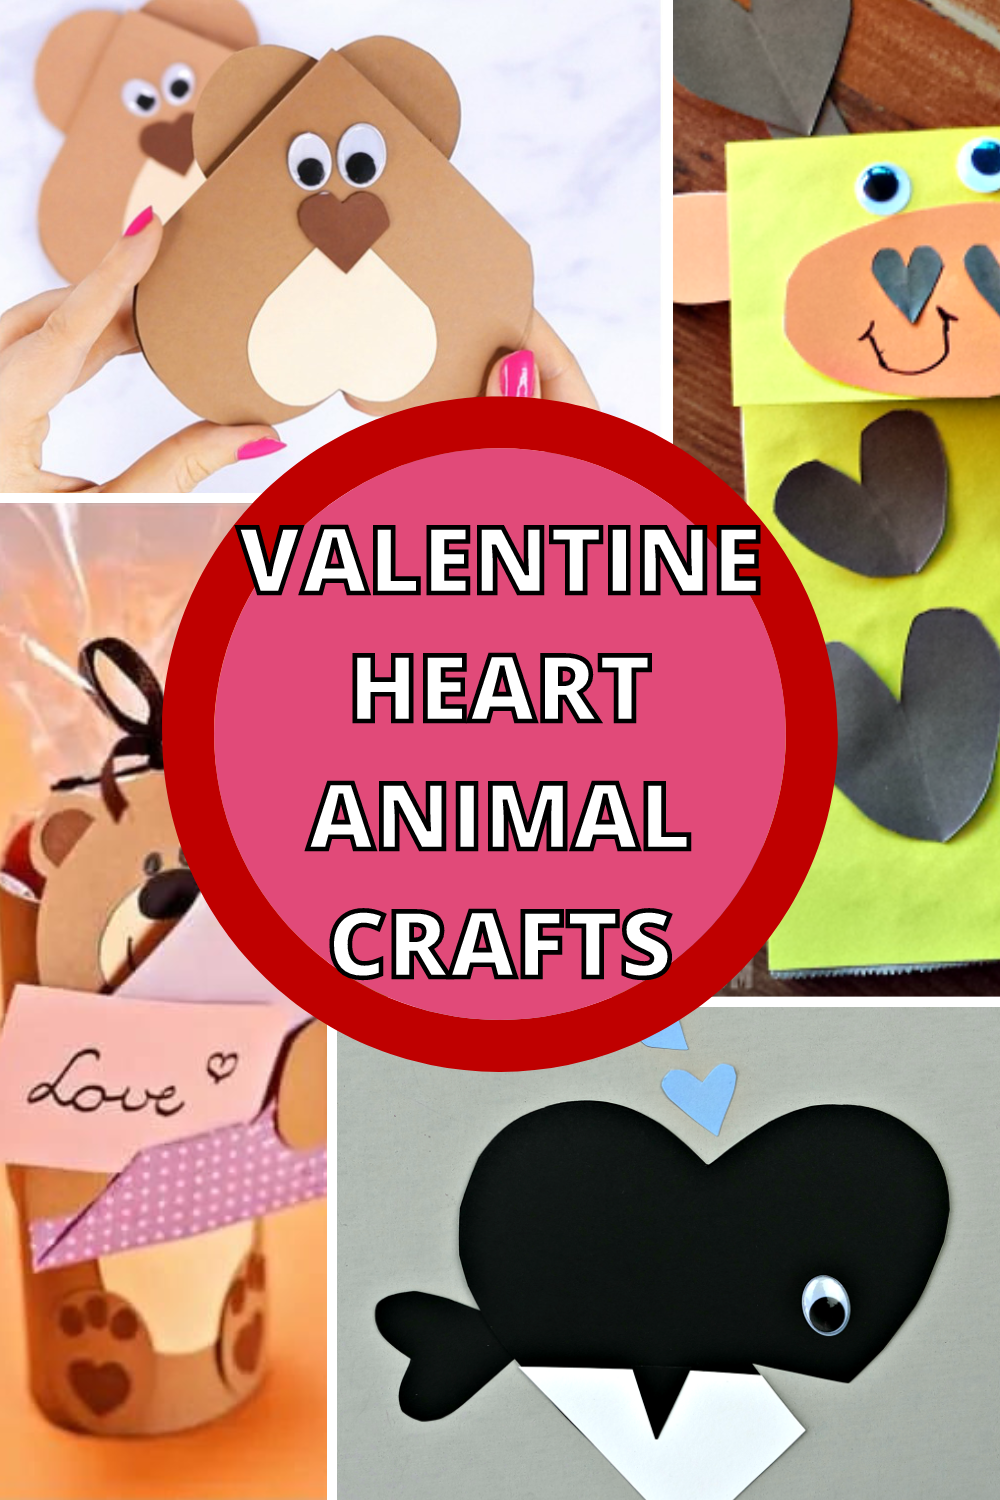 Valentine-heart-animals-crafts Valentine Heart Animals